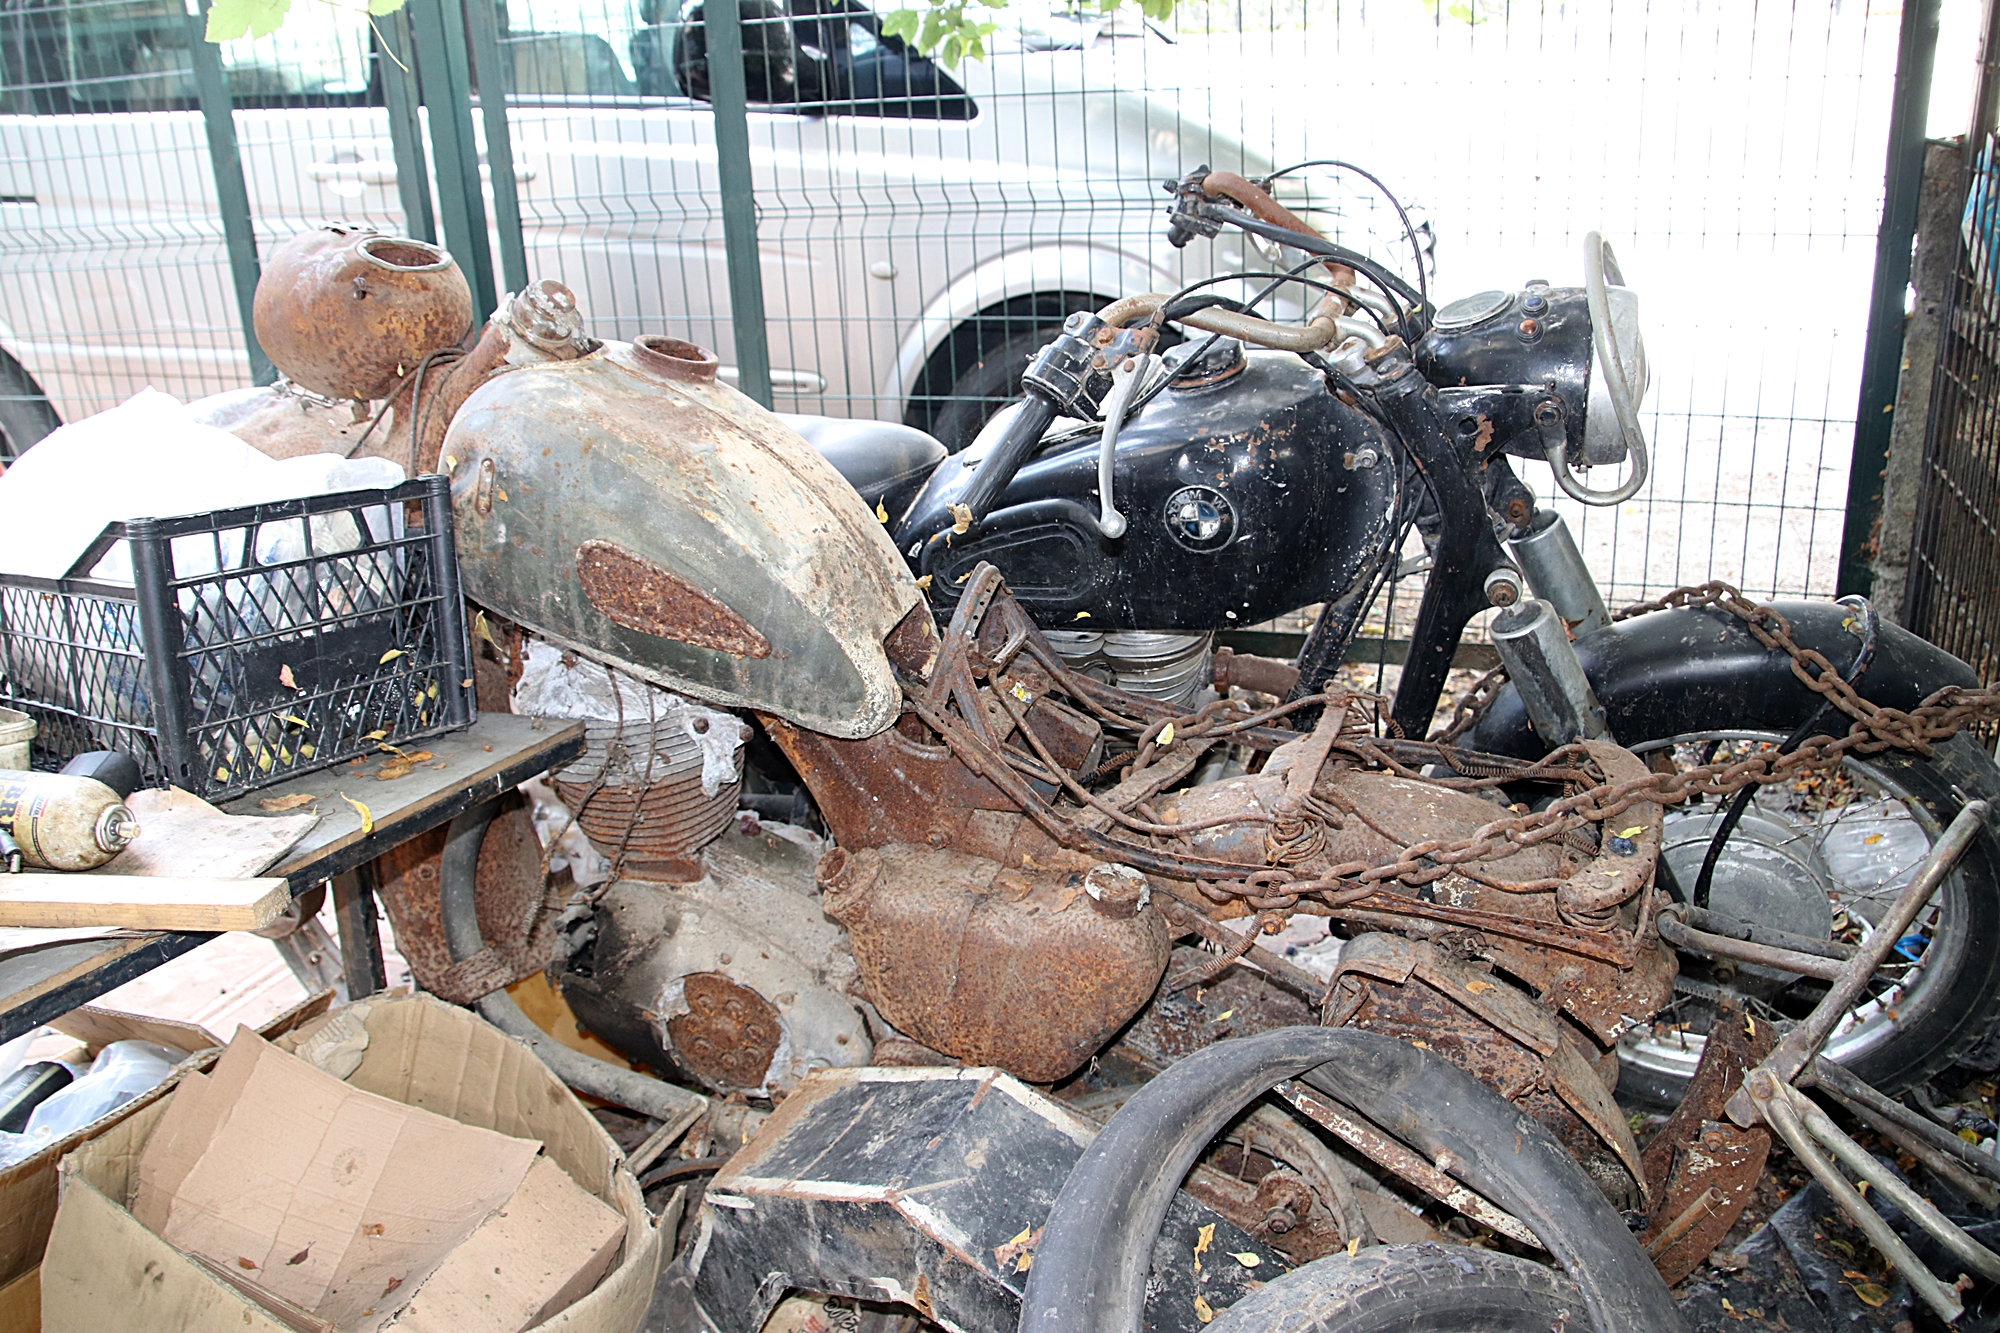 80-yillik-hurda-motosikletleri-tamir-edip-yeniden-kullanima-sunuyor-6423-dhaphoto3.jpg